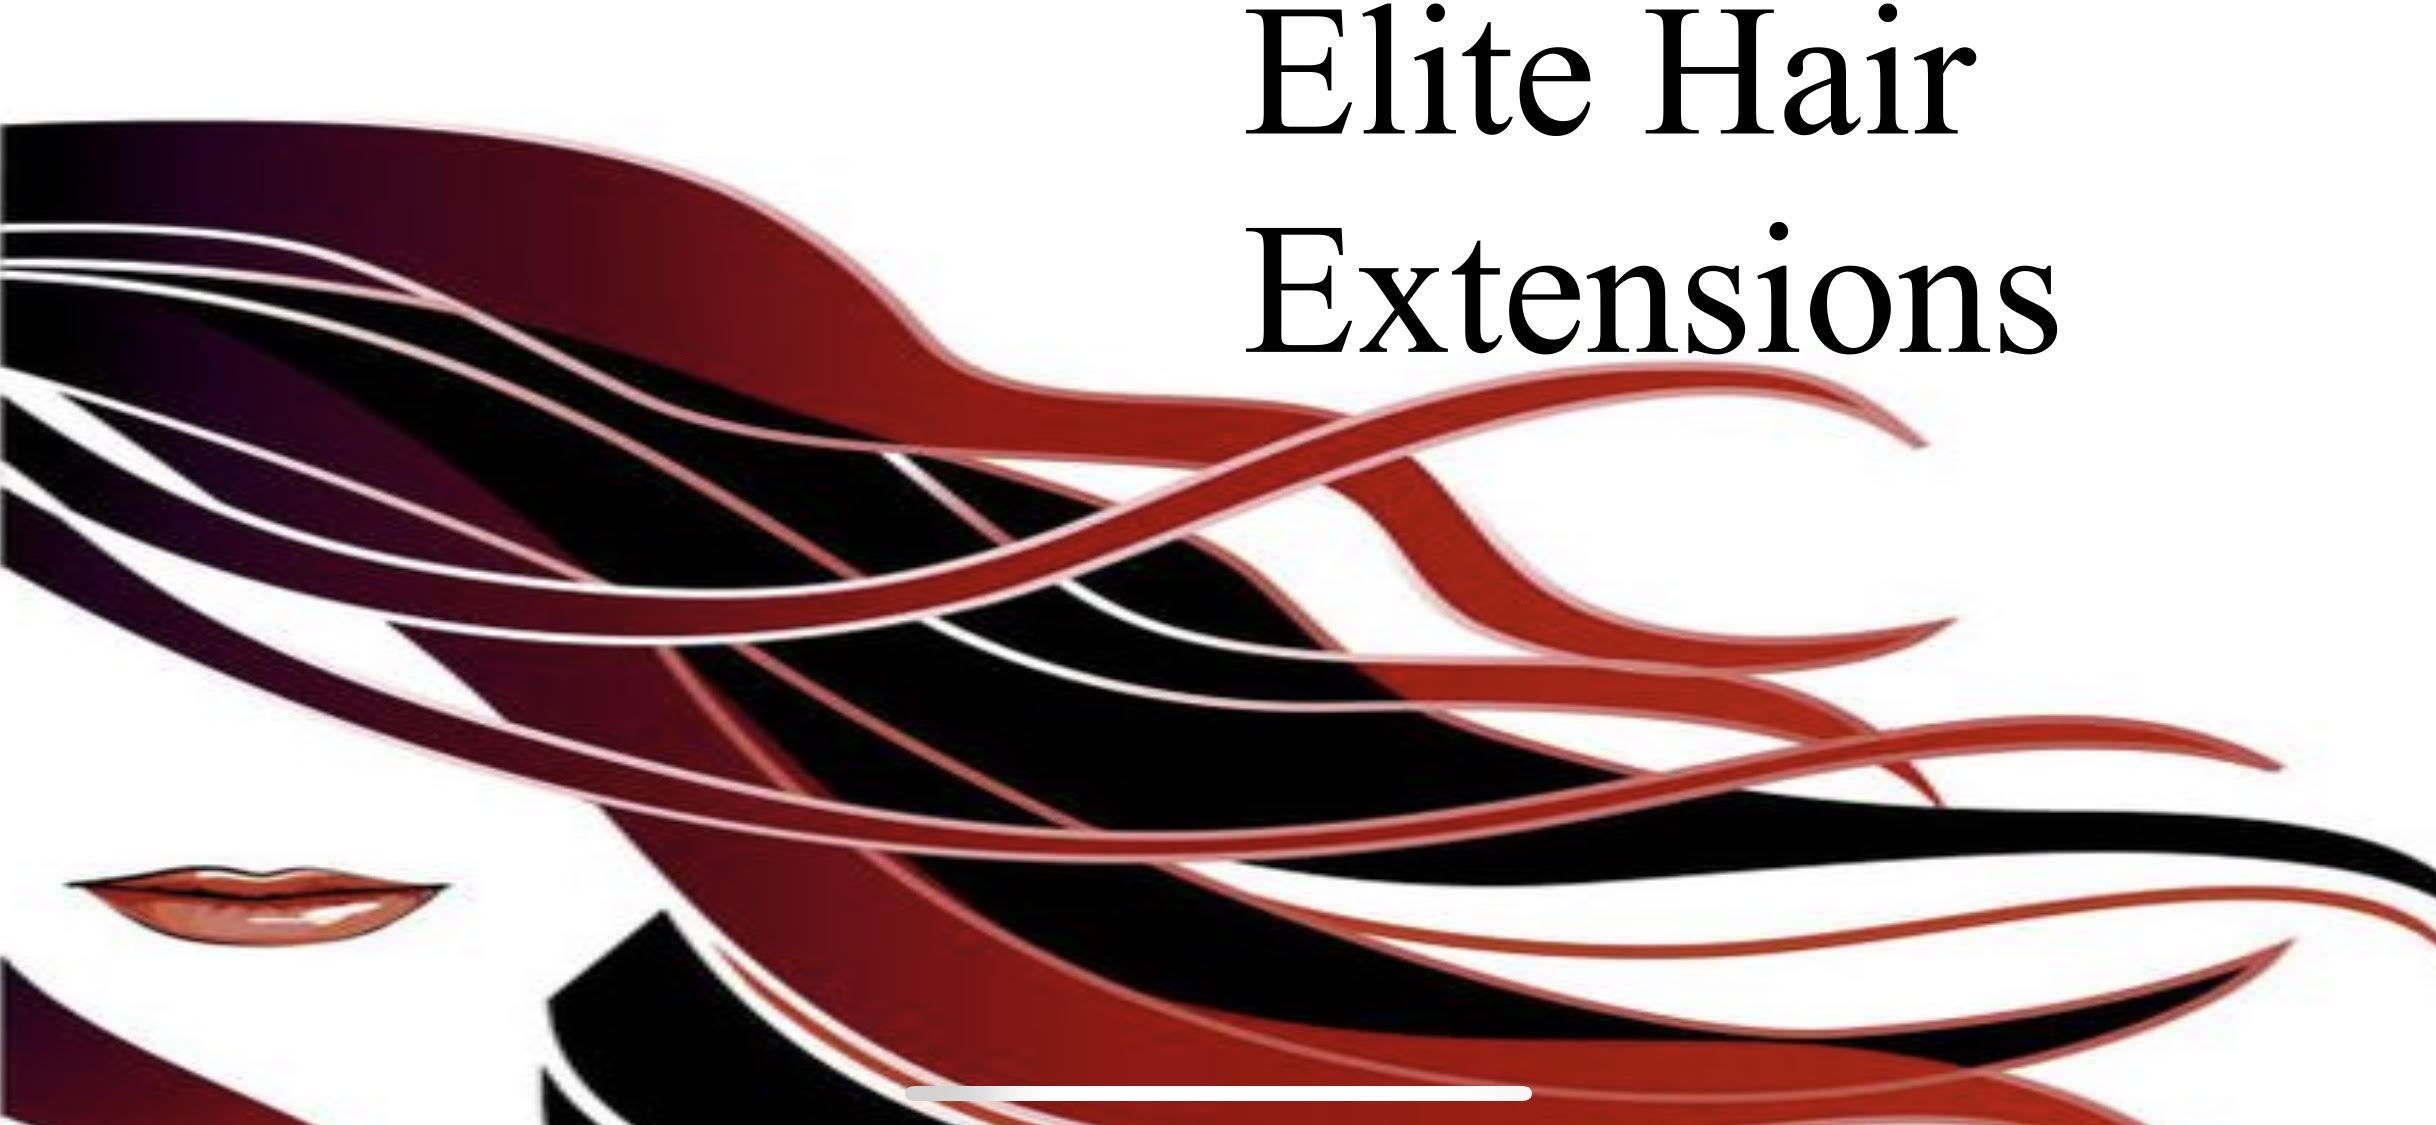 ELITE HAIR EXTENSIONS